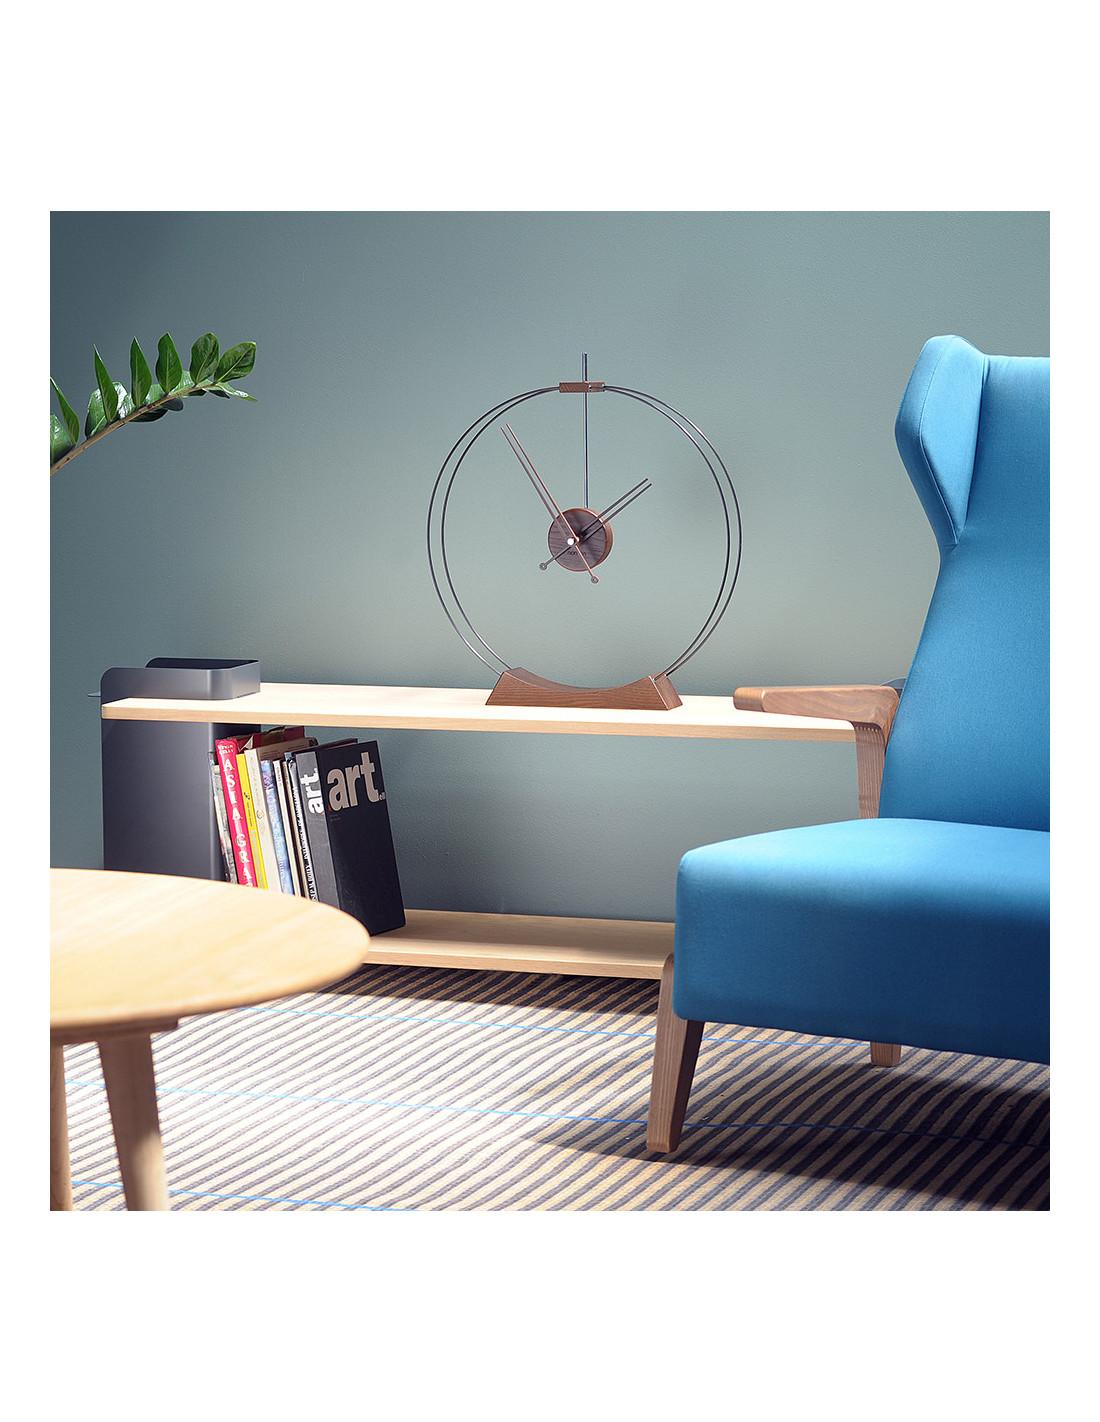 Es ist eine Design-Uhr, die auf einem modernen Möbelstück im minimalistischen Stil ausgestellt werden kann. Es ist ein ideales Stück für Designhäuser, moderne Wohnungen und Büros.
Aire Tischuhr : Schwarzes Fiberglas, Eschenholz mit Walnuss